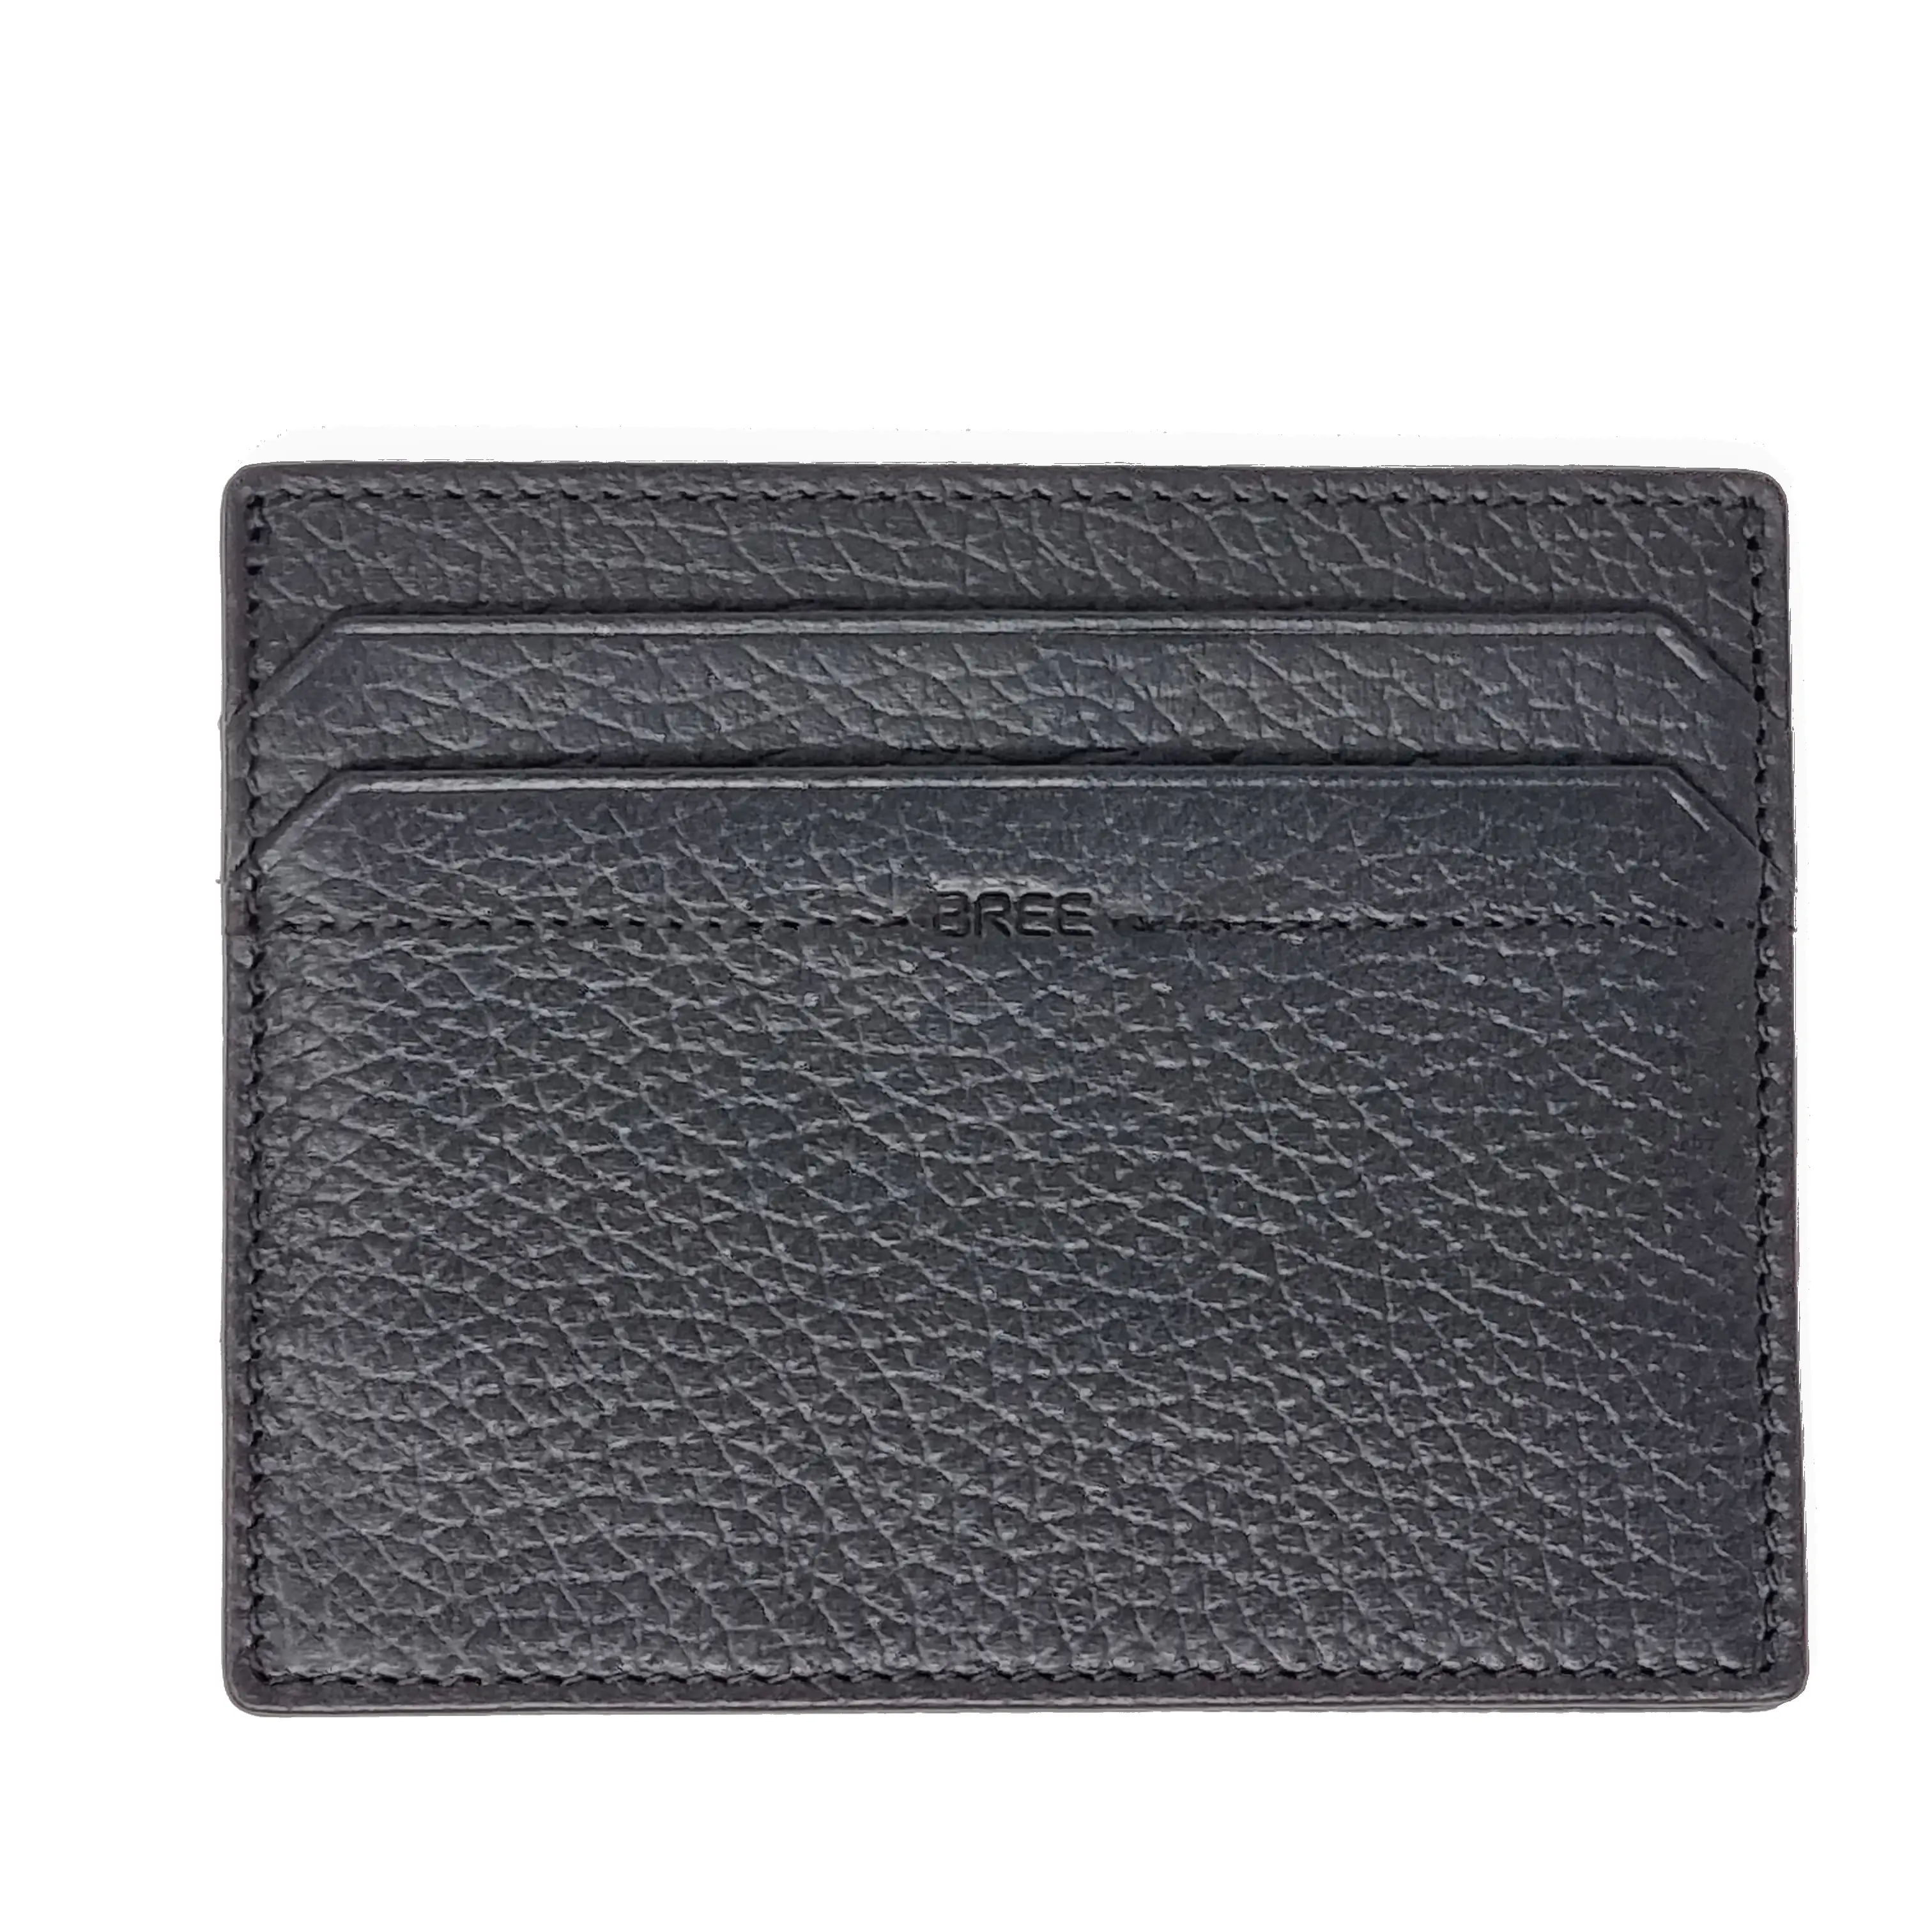 Bree Aiko SLG 103 - schwarz - einfaches Karten-Etui mit RFID